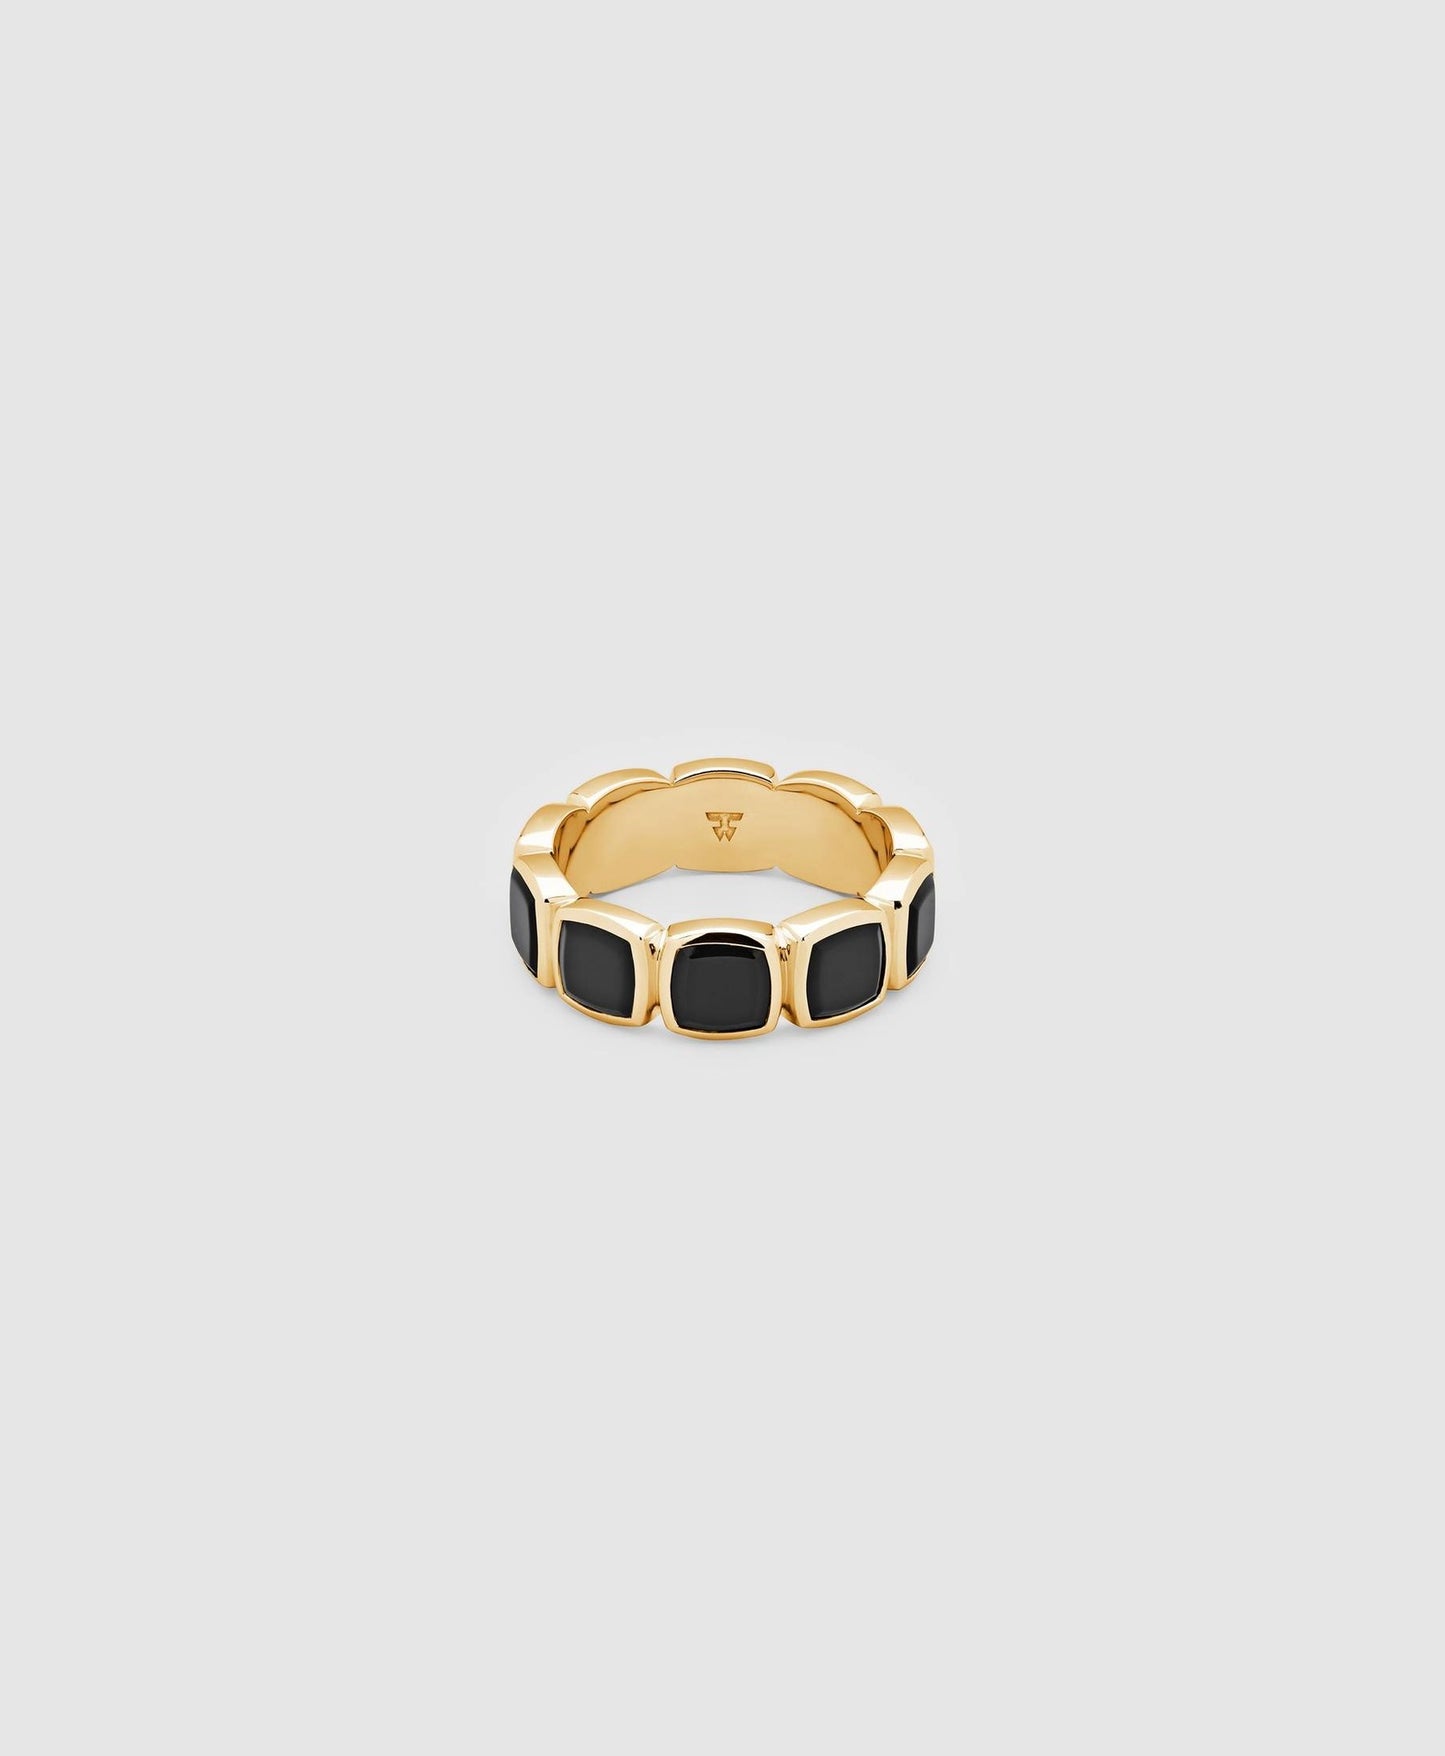 Cushion Band Polished Onyx Gold Ring